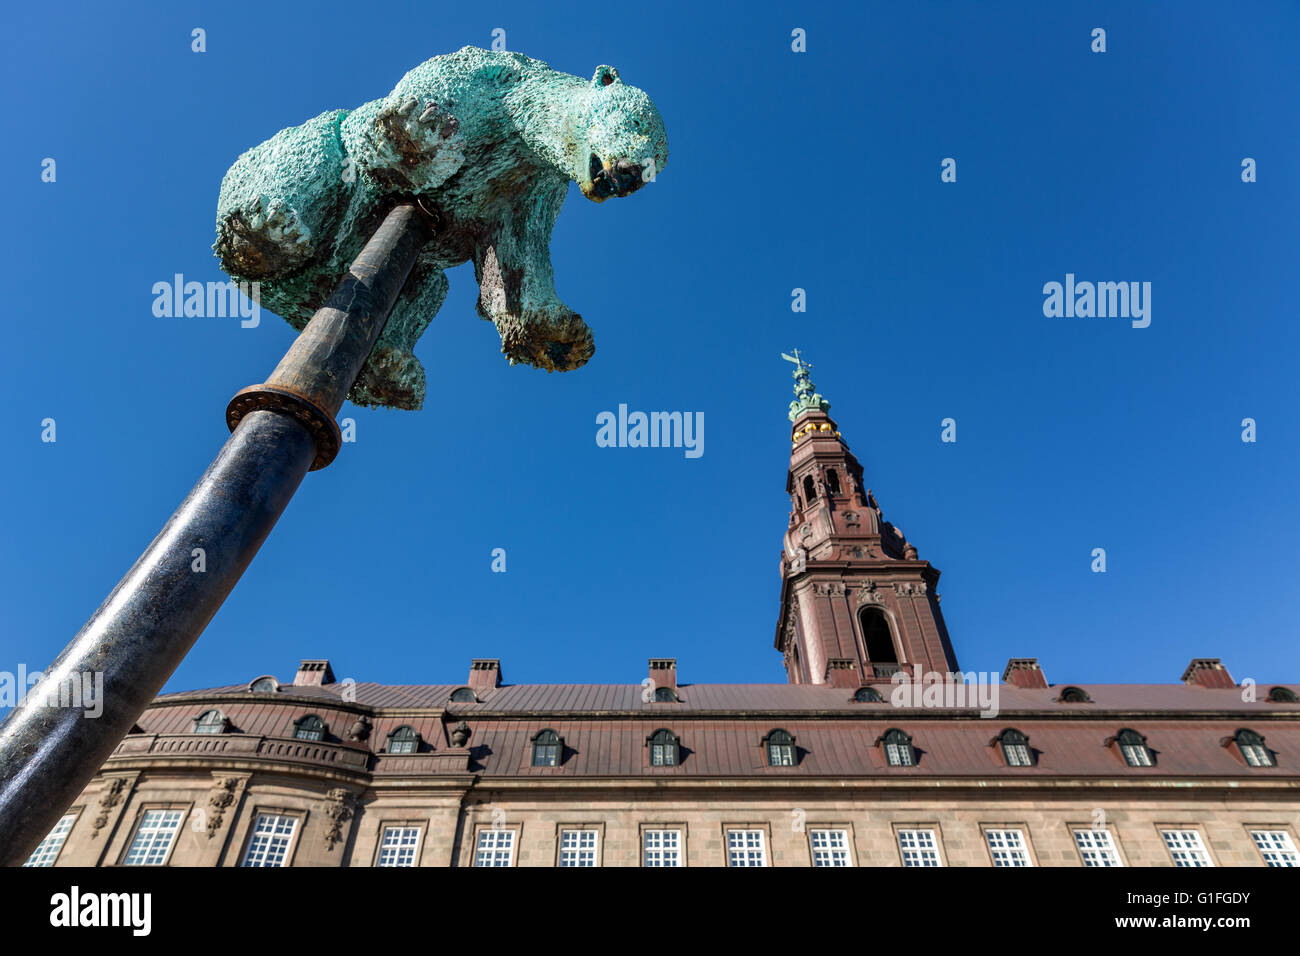 La sculpture 'insupportable' devant le Parlement danois, Slotsholmen, Copenhague, Danemark Banque D'Images